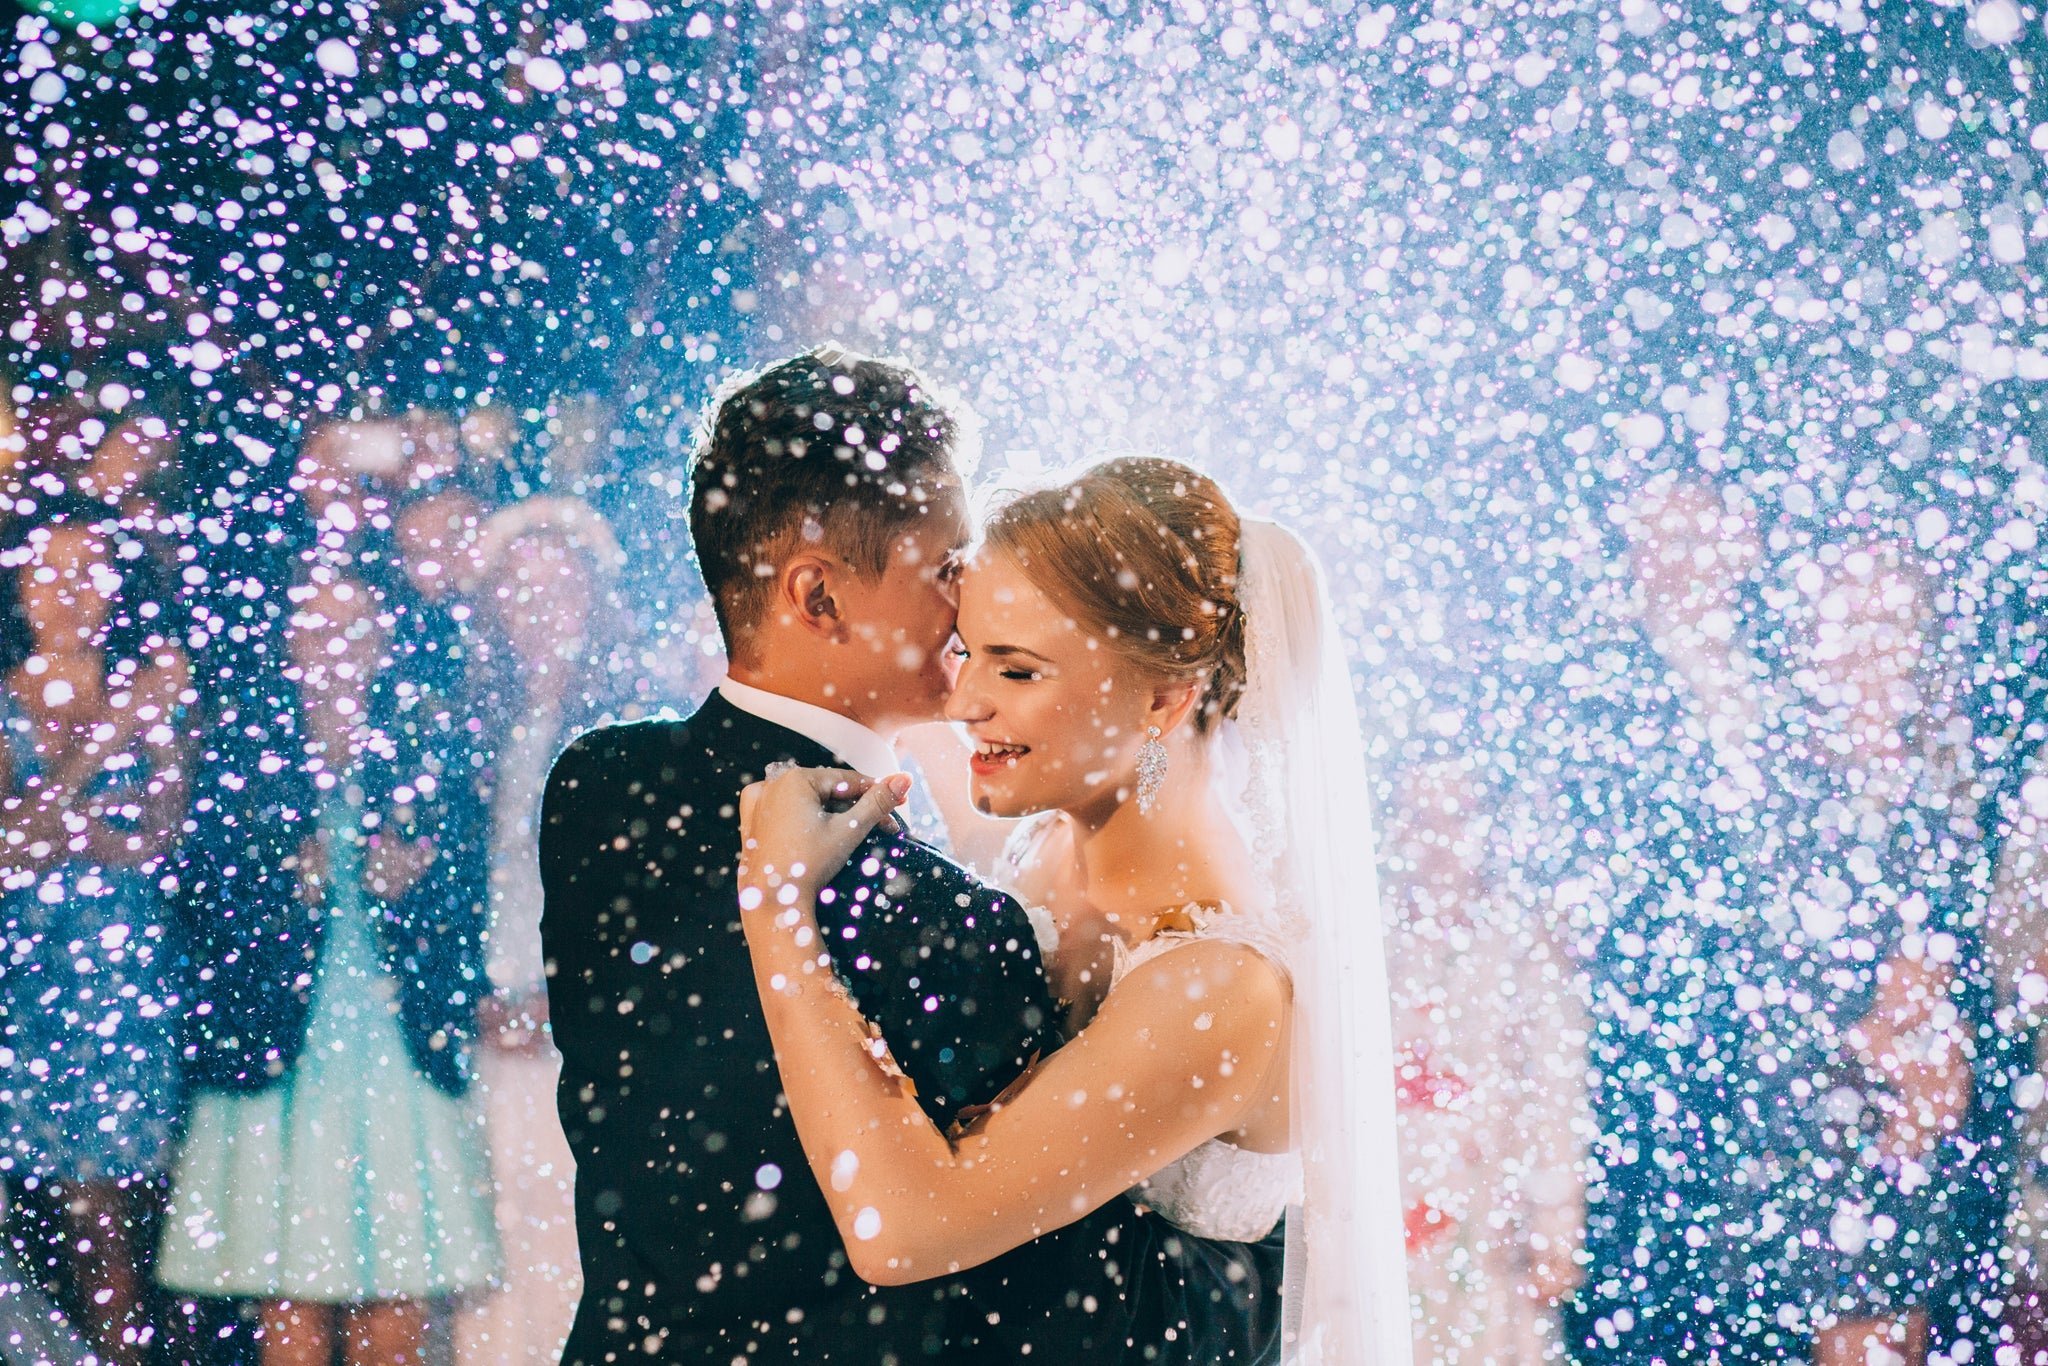 Ли конфетти. Конфетти на свадьбу. Свадебный танец. Мыльные пузыри на свадьбу. Искусственный снег на свадьбу.